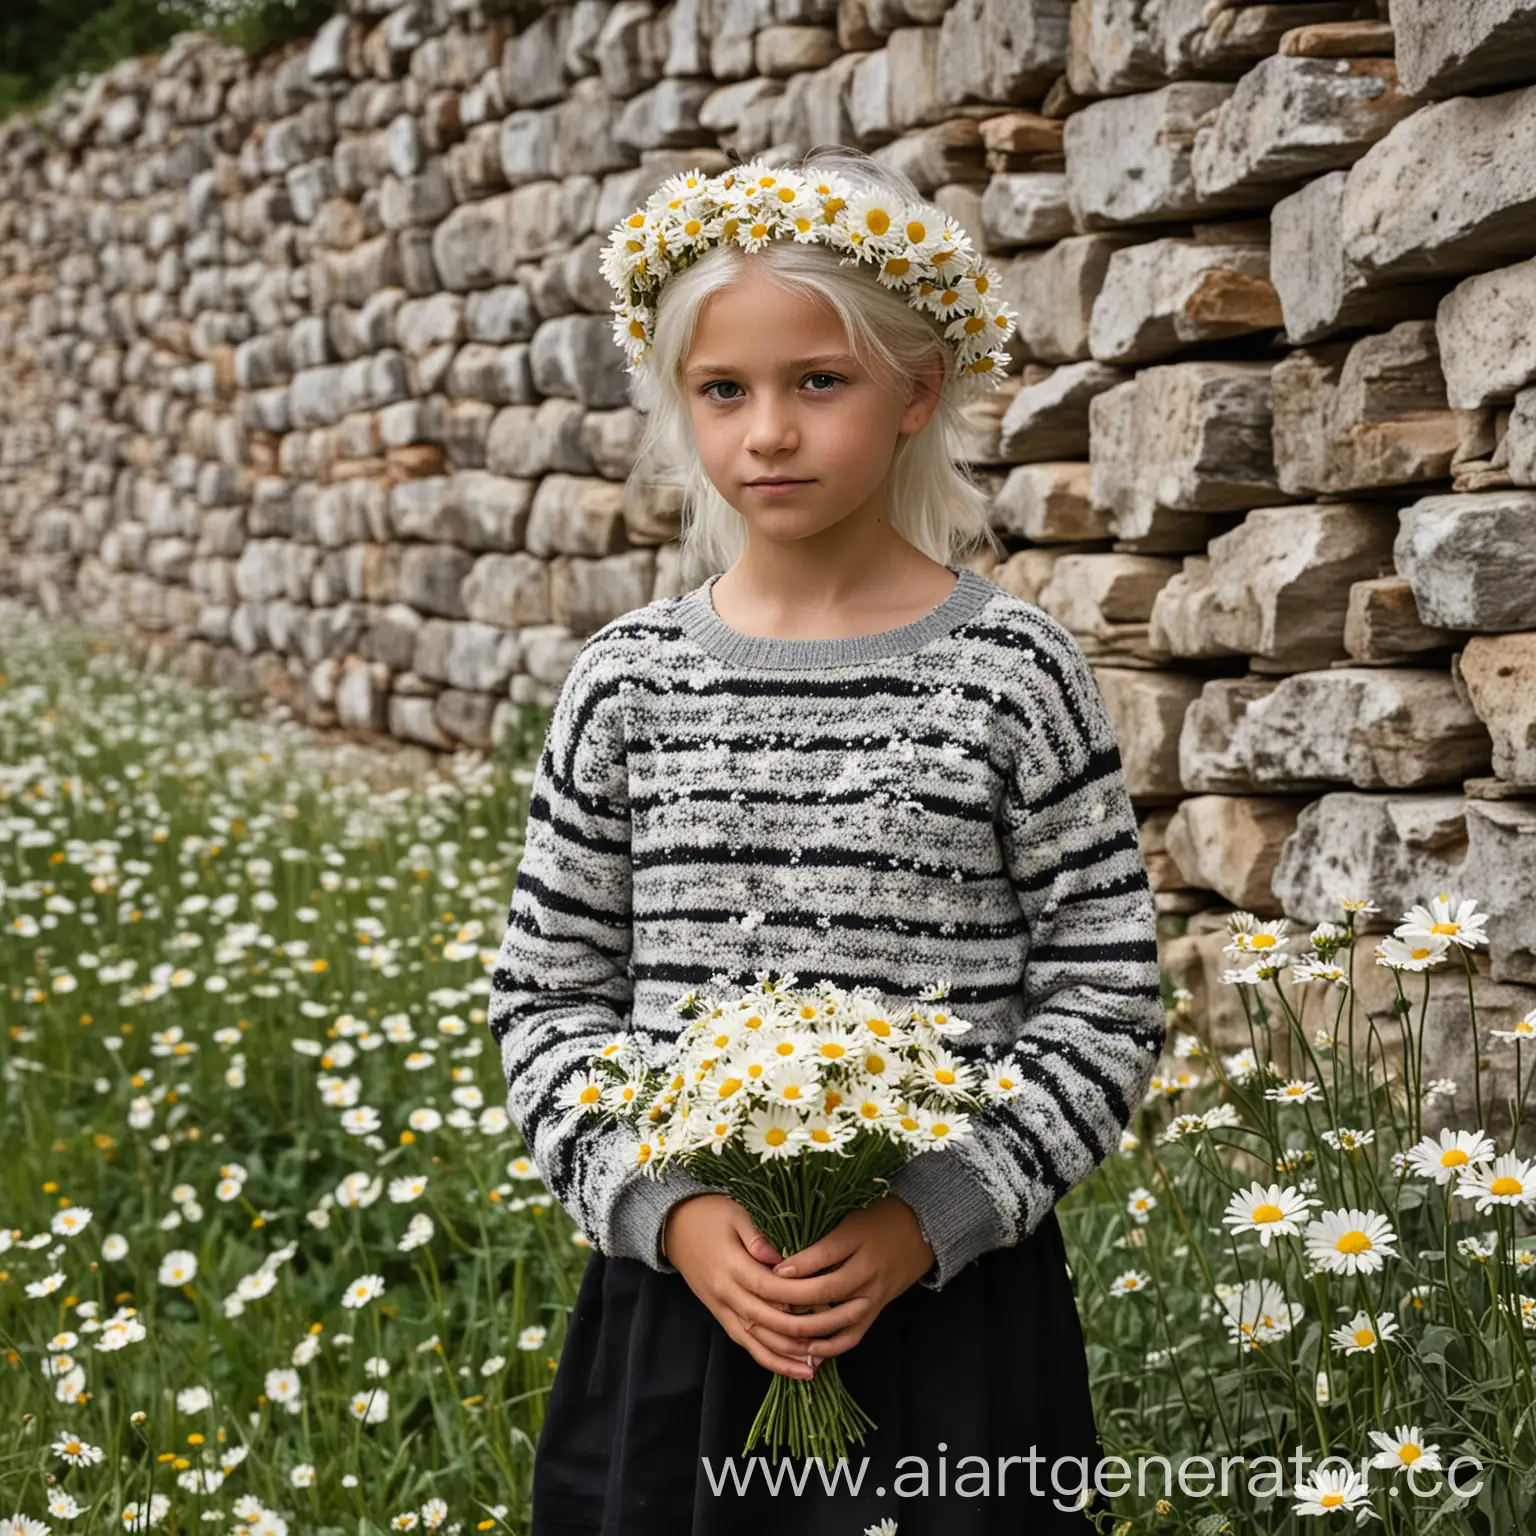 Девочка лет 12 с белыми волосами стоит в ромашковом поле около каменной стены, сжимая в руке букет ромашек, глаза серые, на девочке полосатая вязанная кофта, черная юбка, на голове ободок